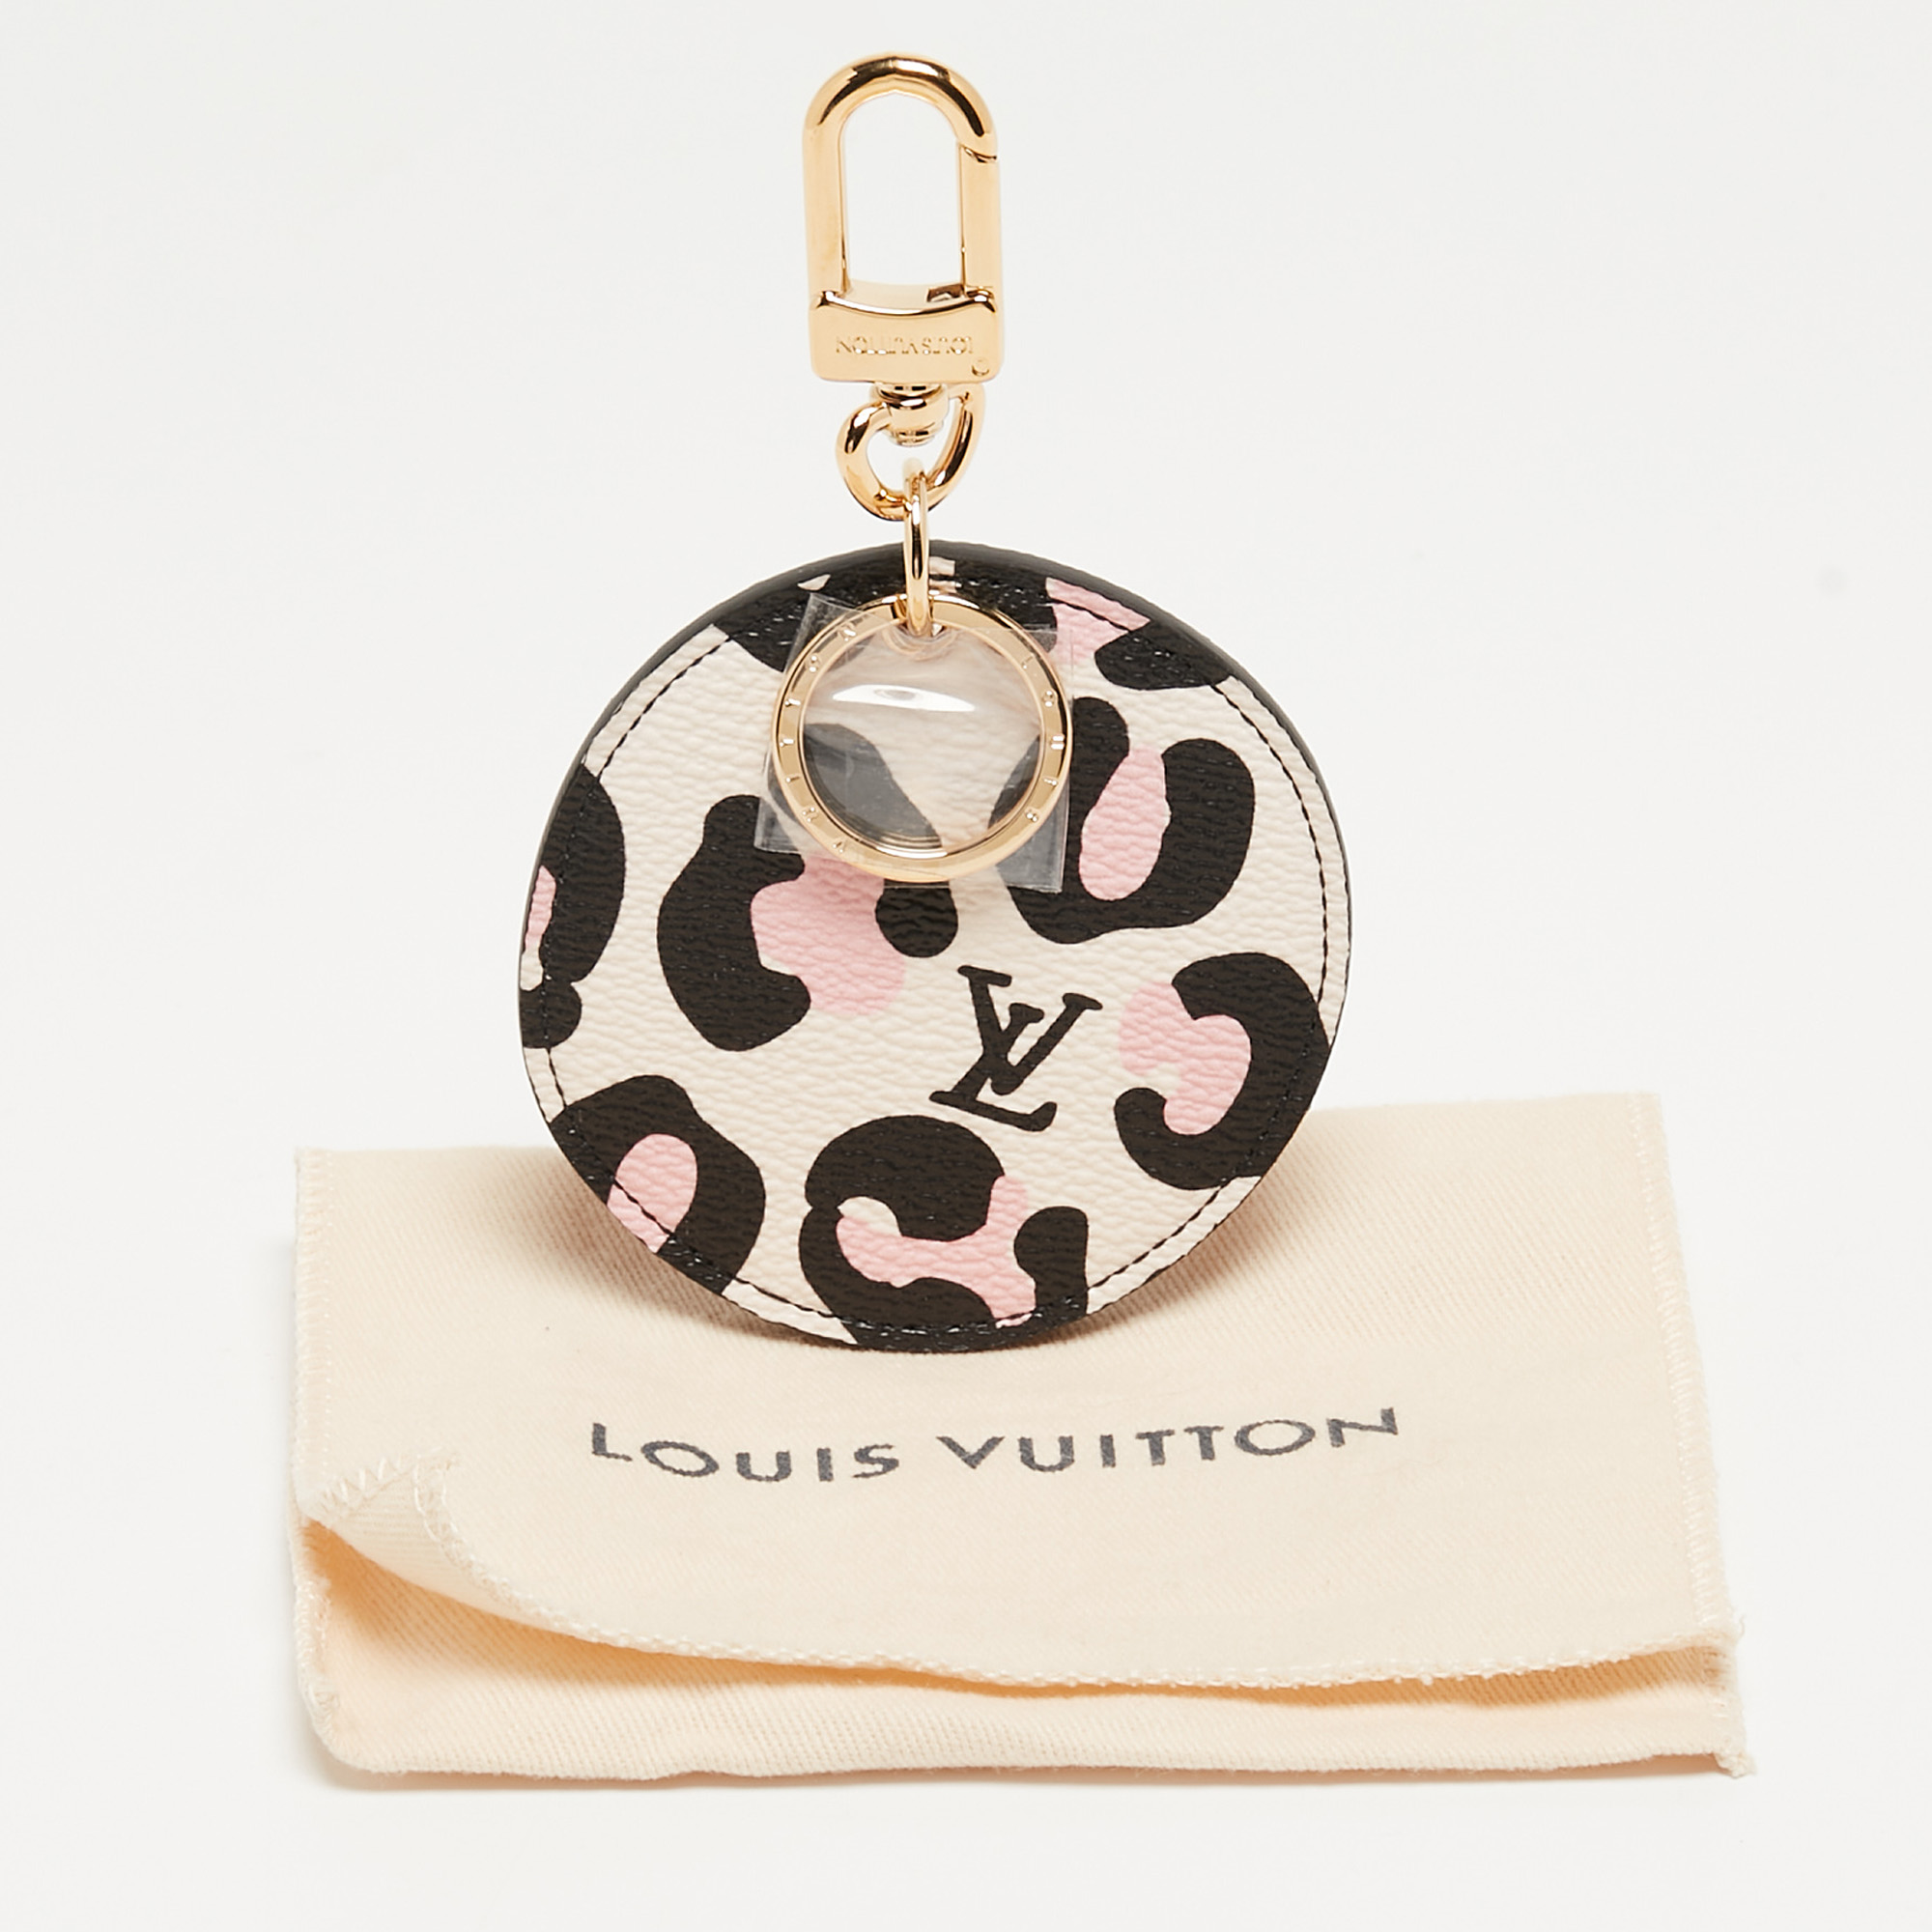 Louis Vuitton Monogram Canvas Wild At Heart Illustre Bag Charm